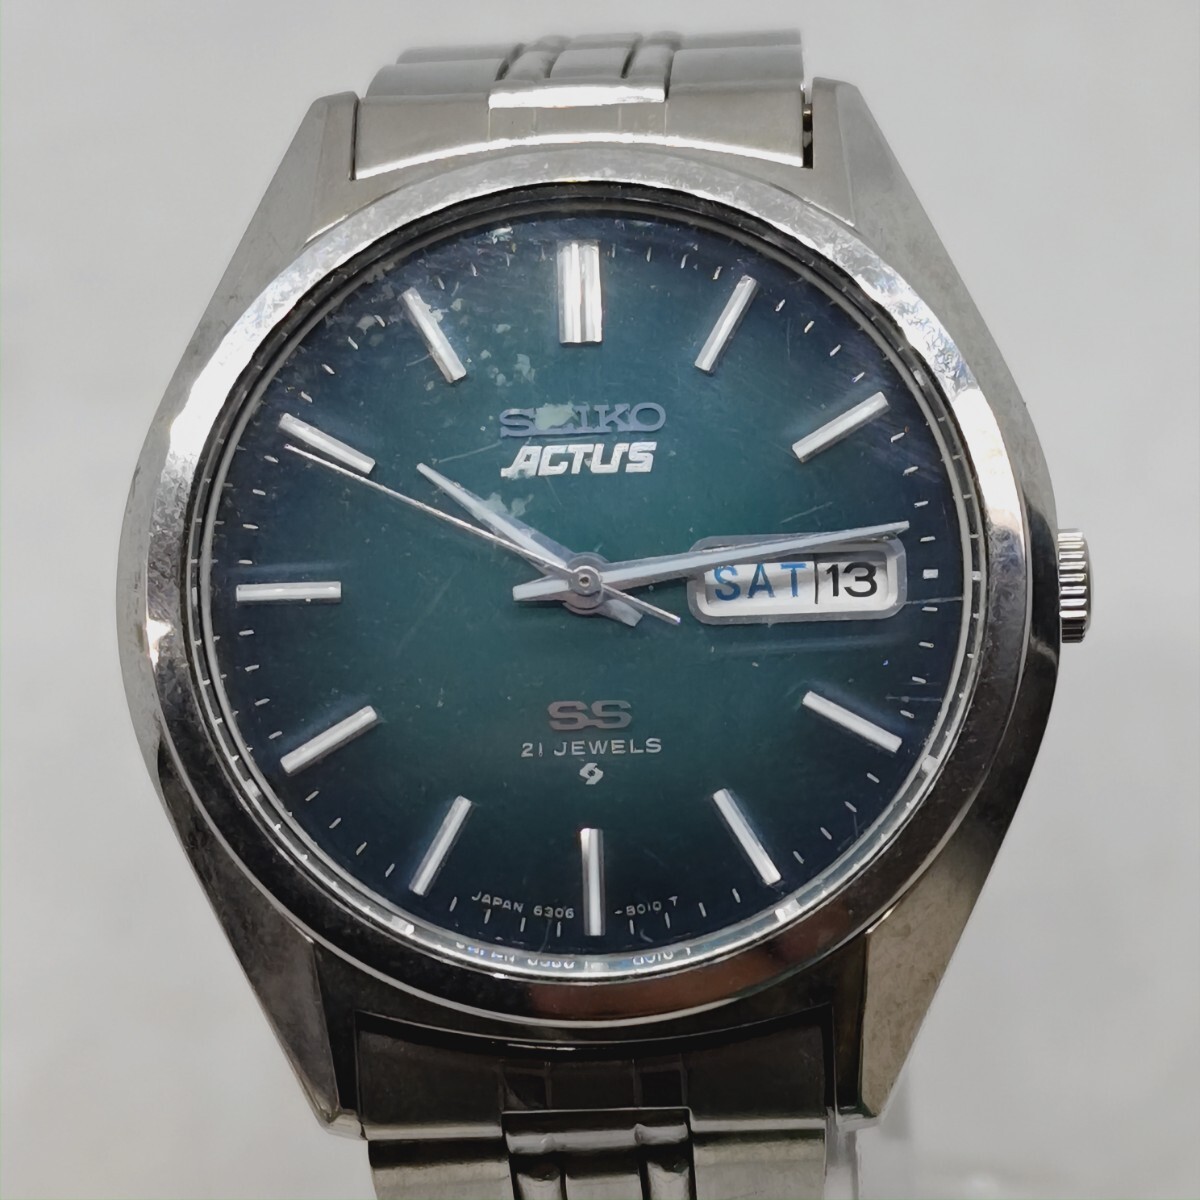 SEIKO ACTUS SS 6306-8020 21石 セイコー アクタス デイデイト メンズ 自動巻き 腕時計 緑文字盤 純正ベルト みの画像1